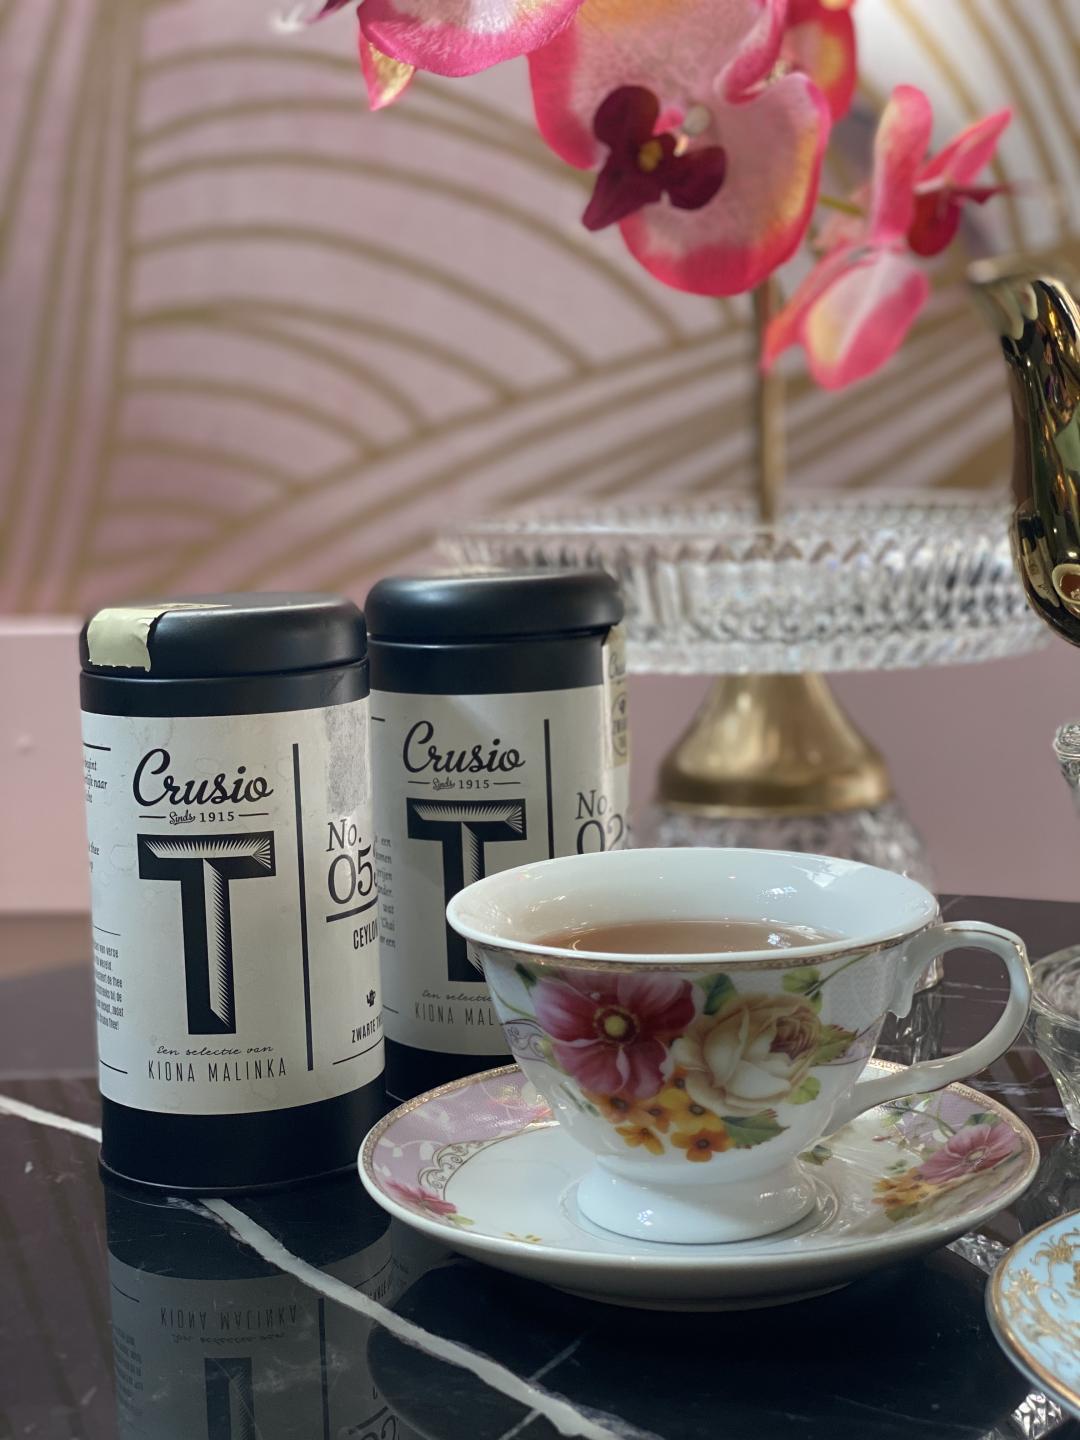 High tea met heerlijke thee van Crusio